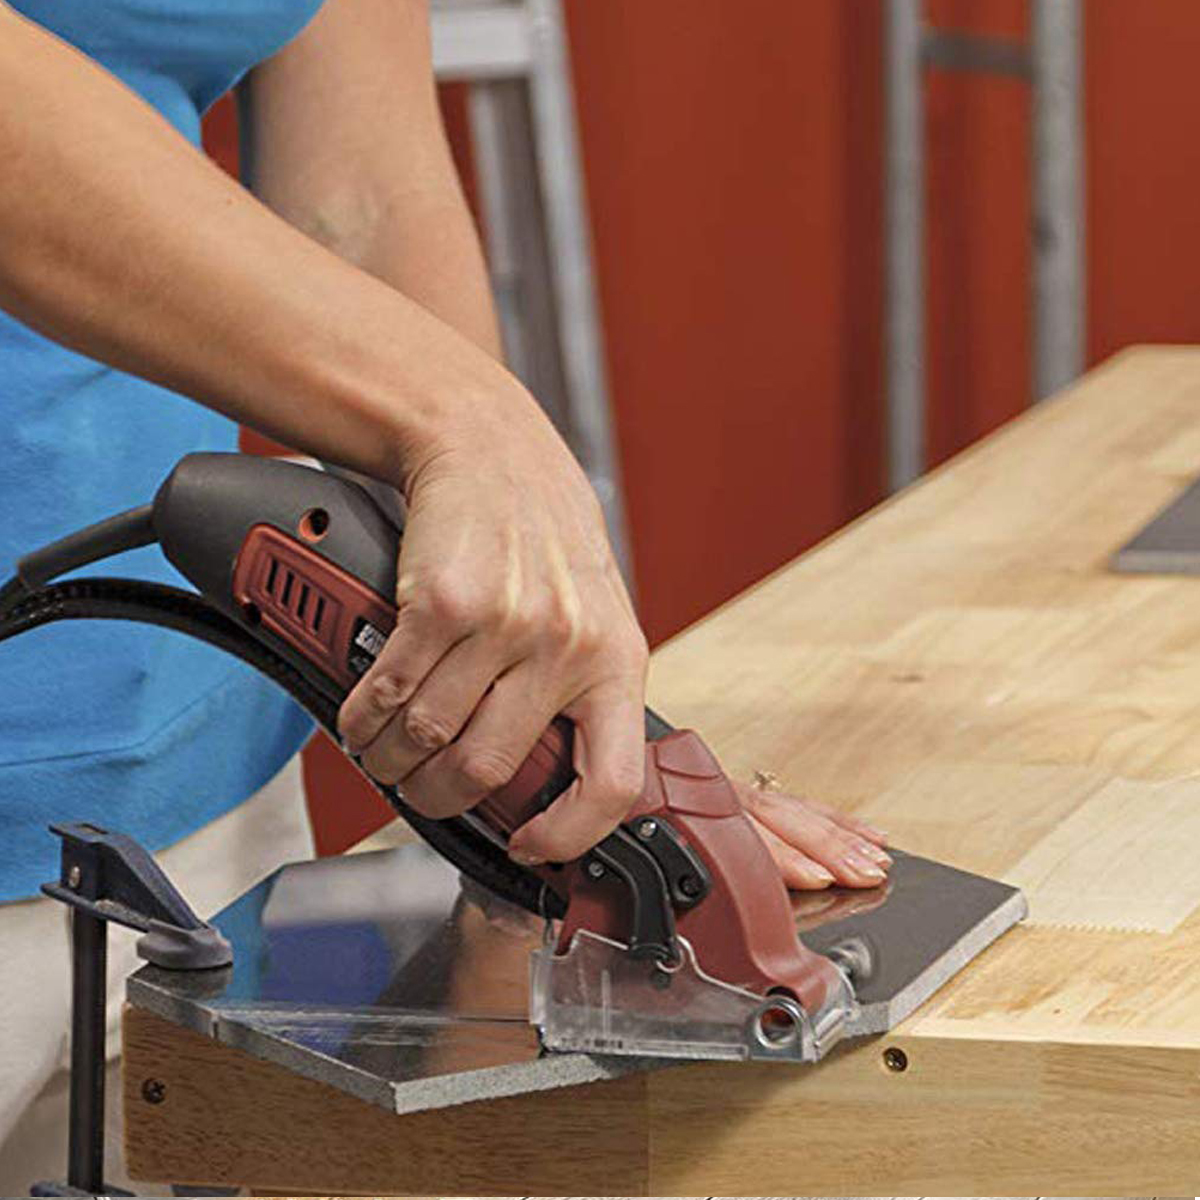 Mini-Cutting-Machine-Electric-Circular-Saw-Multi-Functional-Handheld-Grinder-Kit-Carpenter-Woodwork--1760083-8